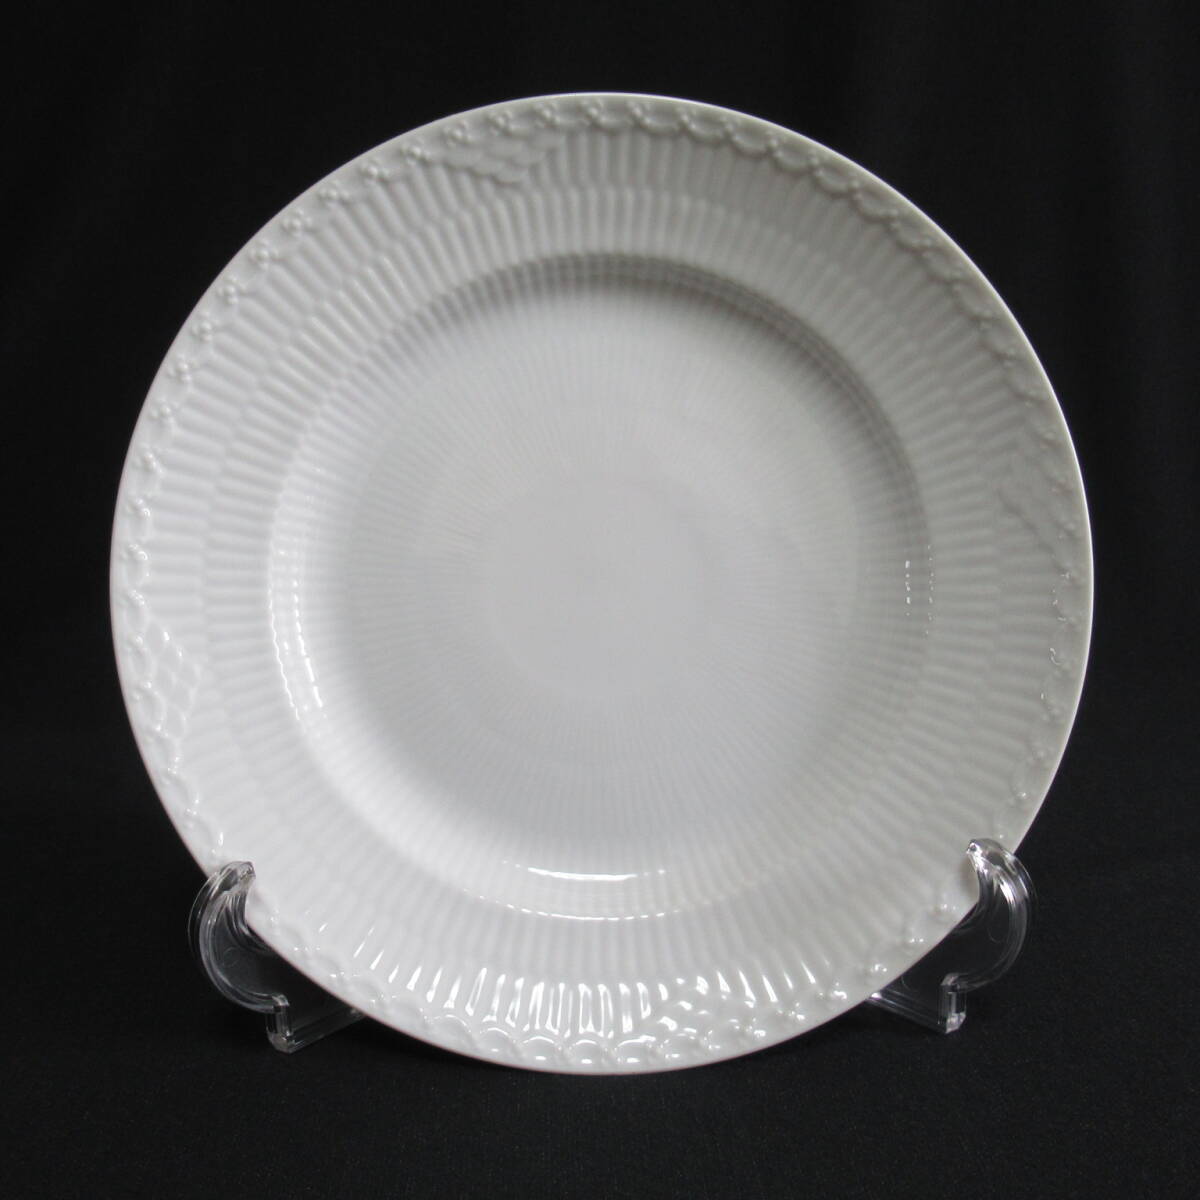 ロイヤルコペンハーゲン ホワイトフルーテッド プレイン プレート 22cm 計6枚 洋食器 皿 テーブルウェア 100サイズ発送 w-2608411-206-mrrzの画像2